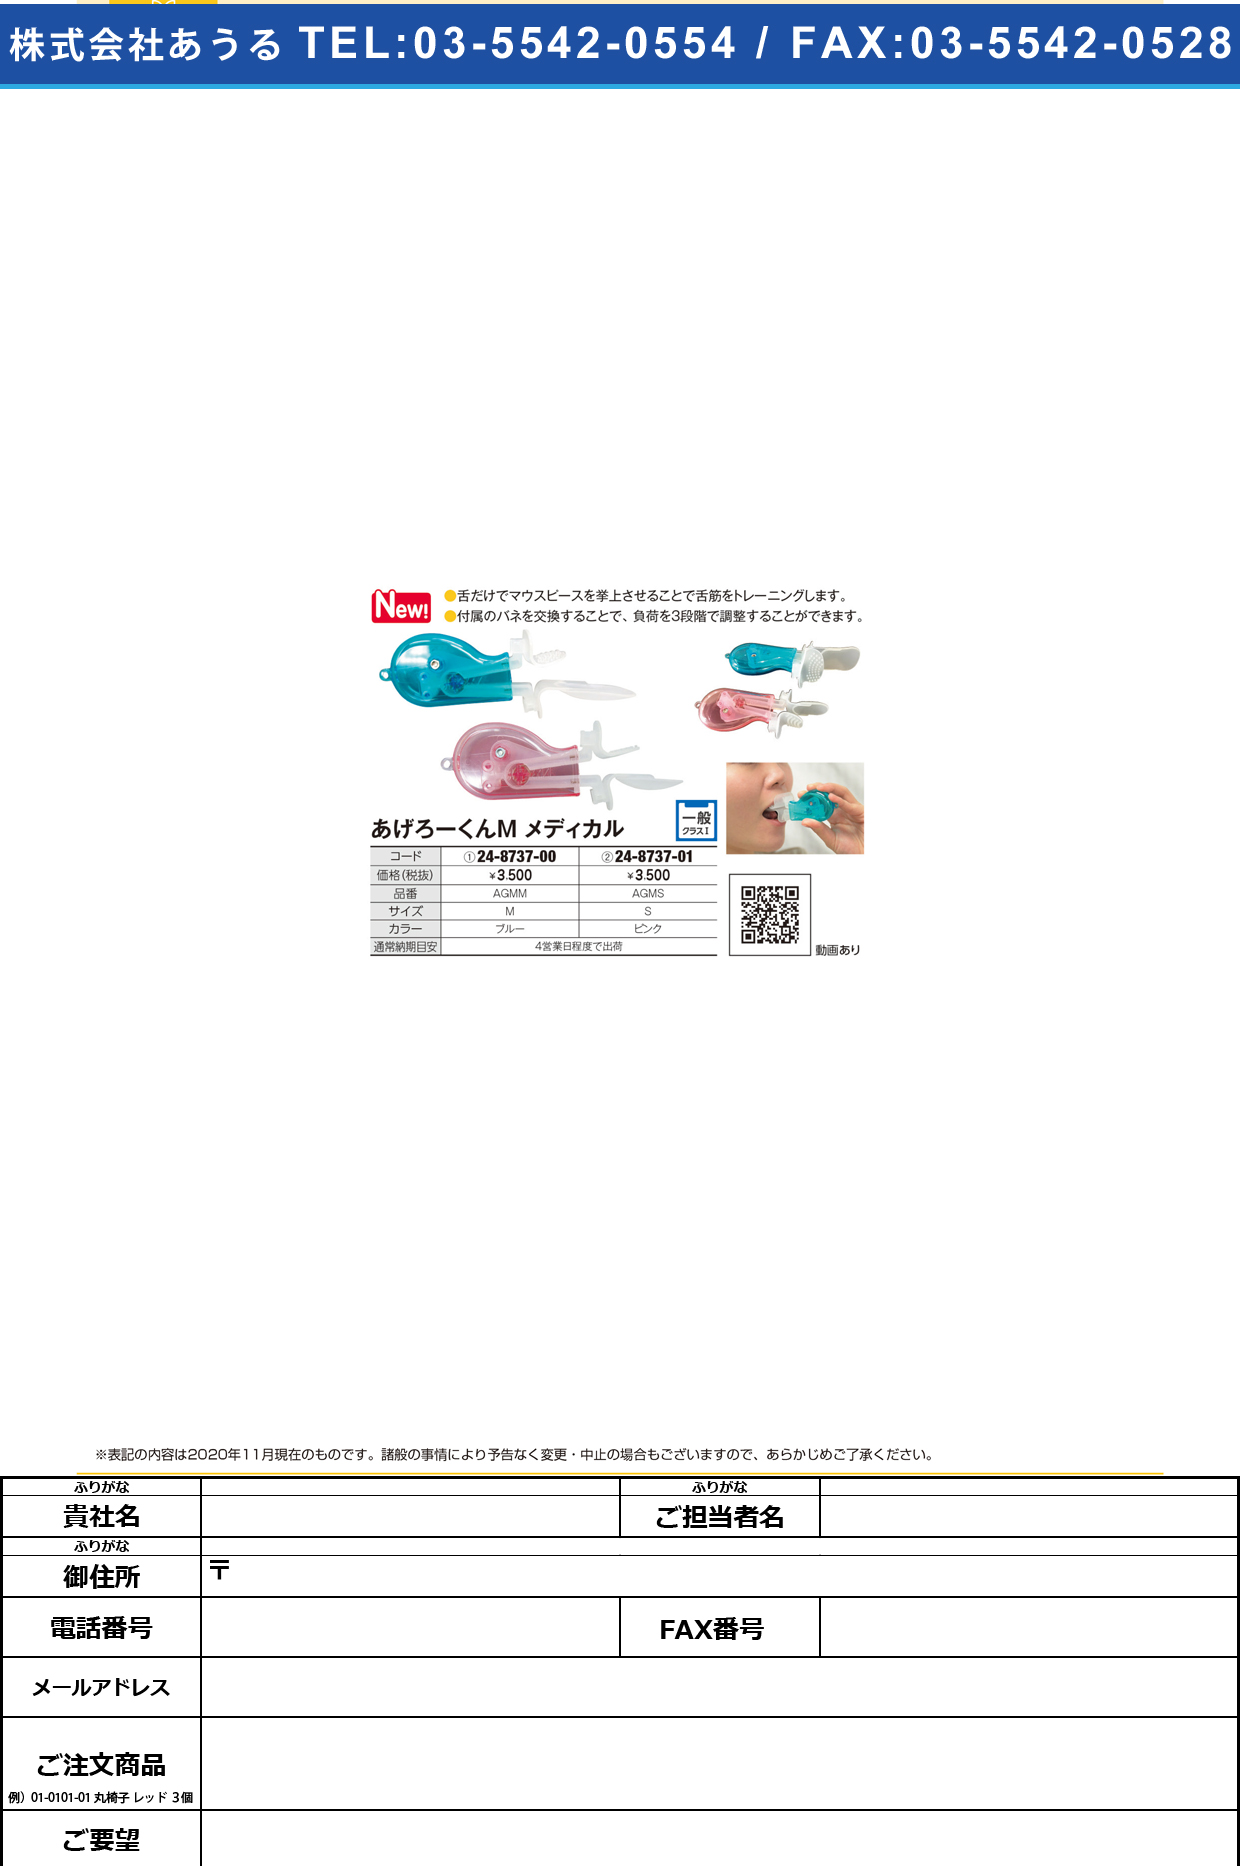 あげろーくんМメディカル AGMS(Sサイズ)AGMS(Sｻｲｽﾞ)(24-8737-01)【ザイコアインターナショナルインク】(販売単位:1)